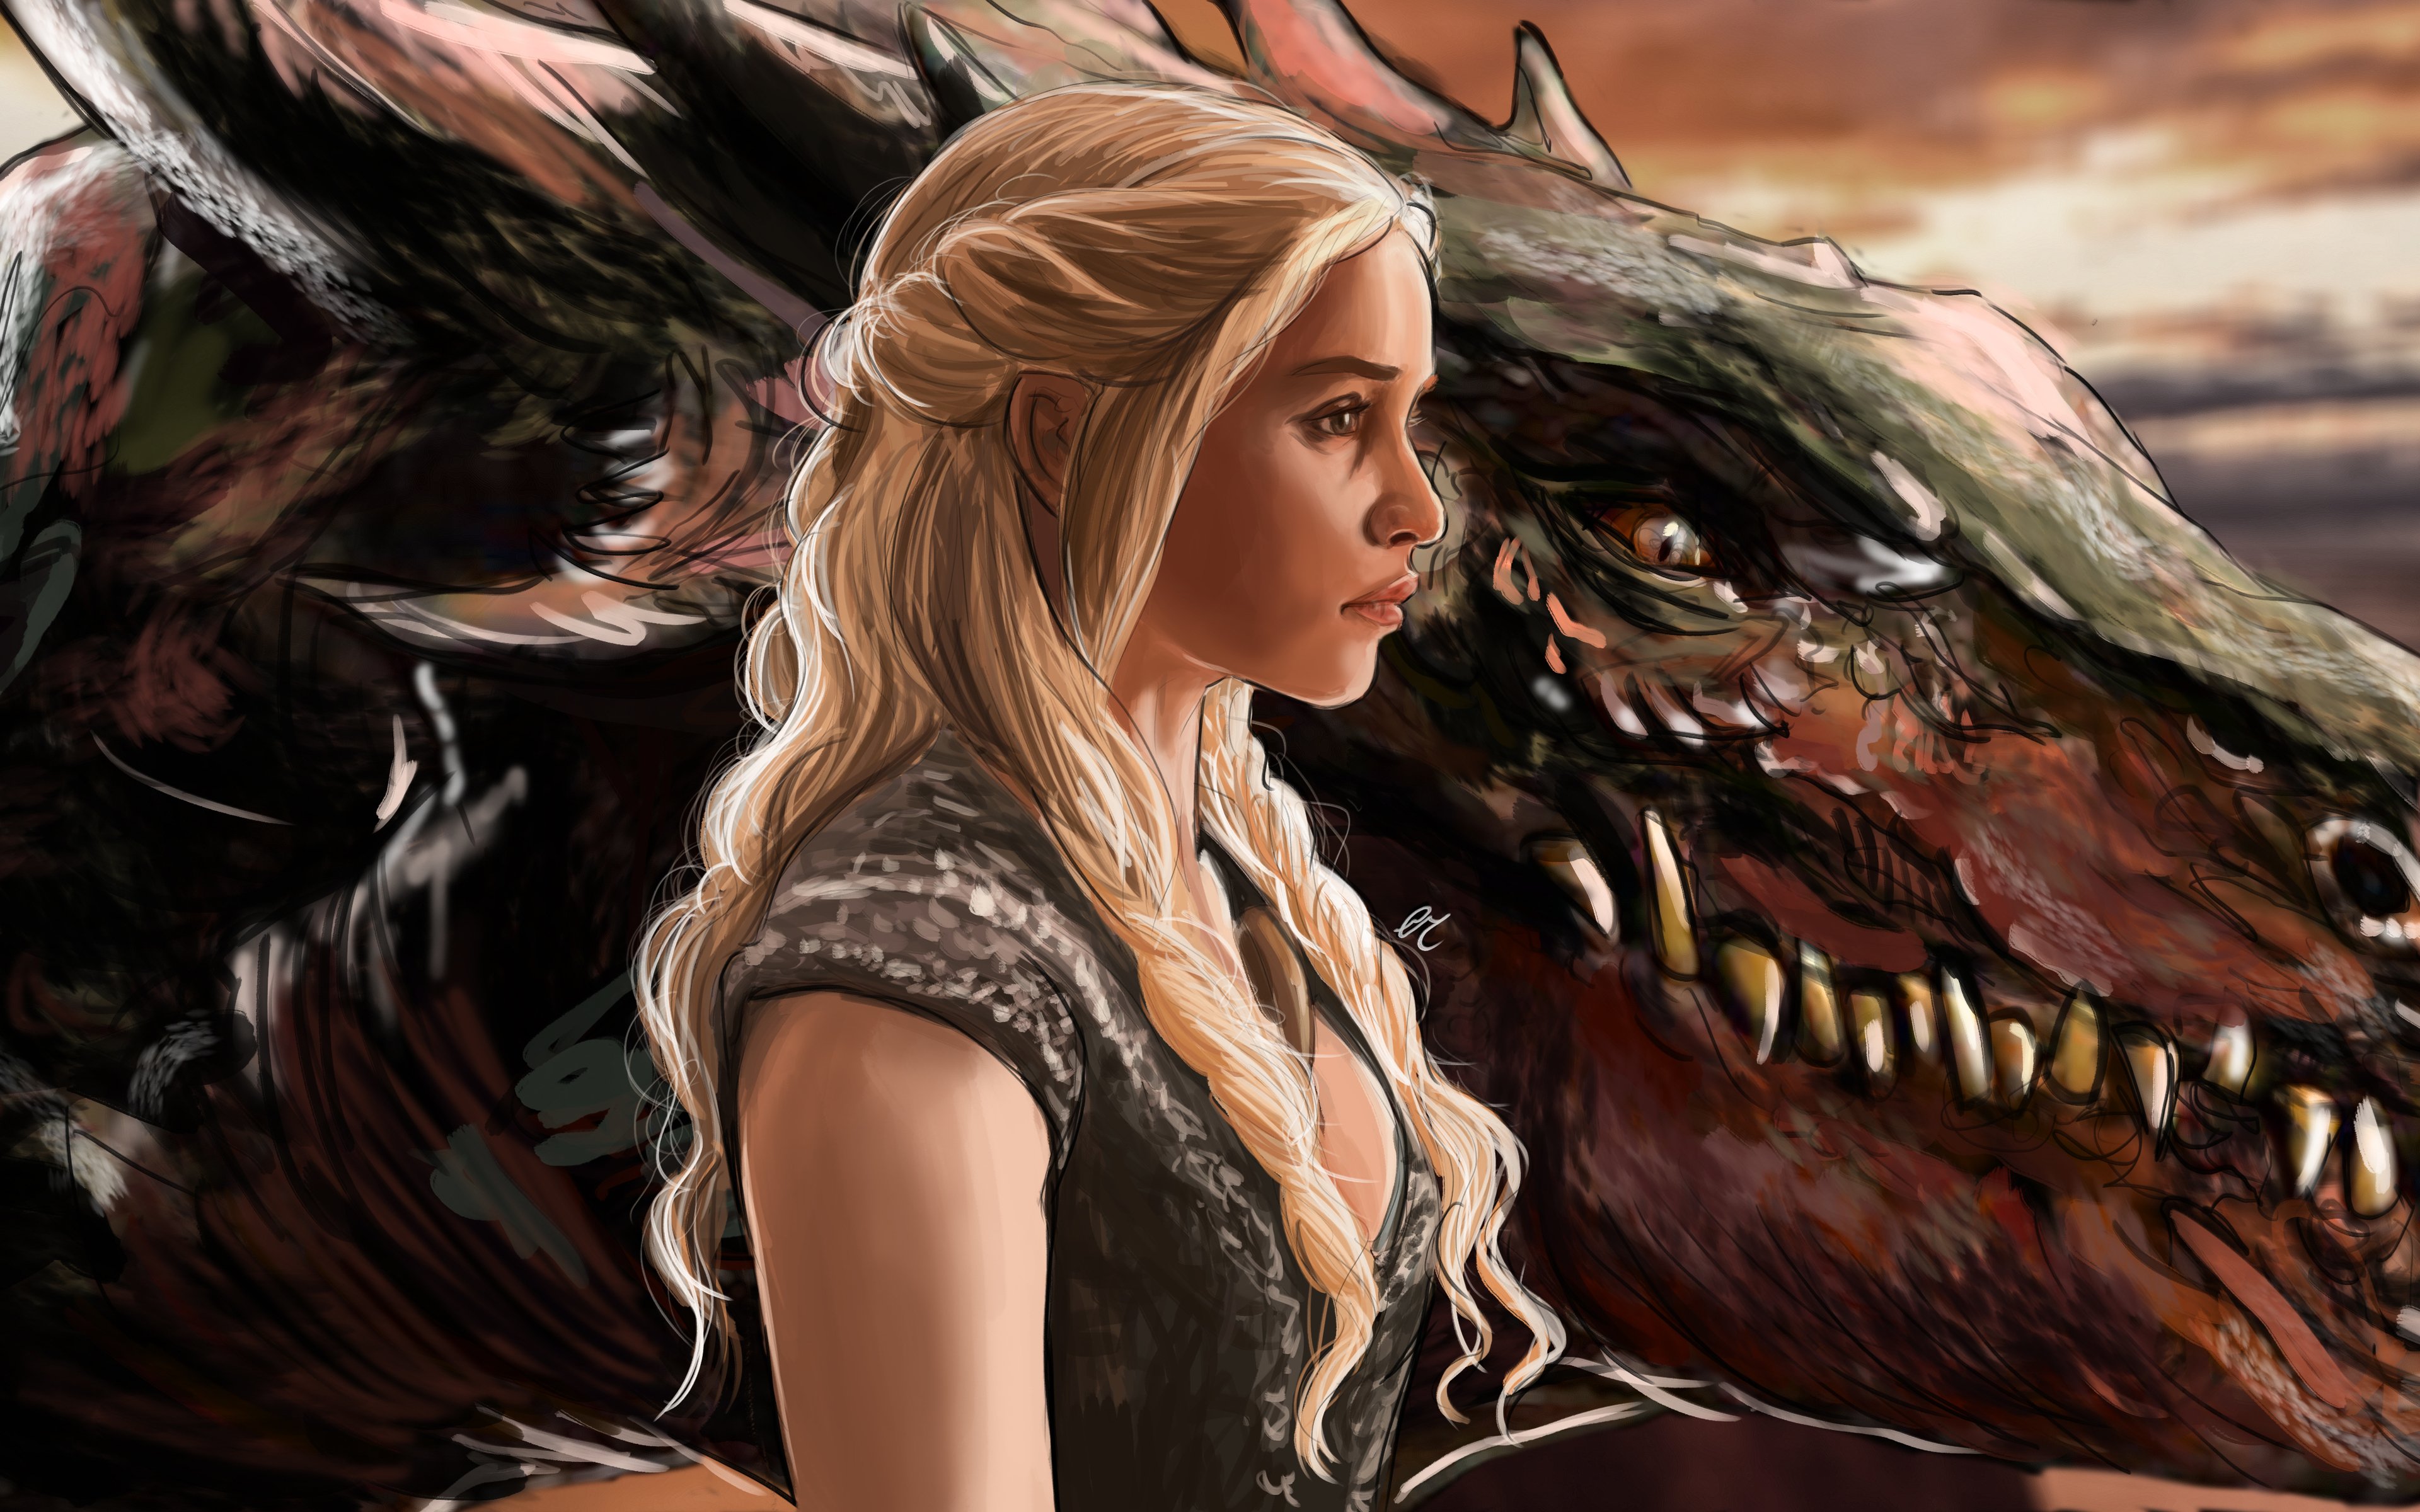 Fondos de pantalla Daenerys Targaryen con dragón Fanart